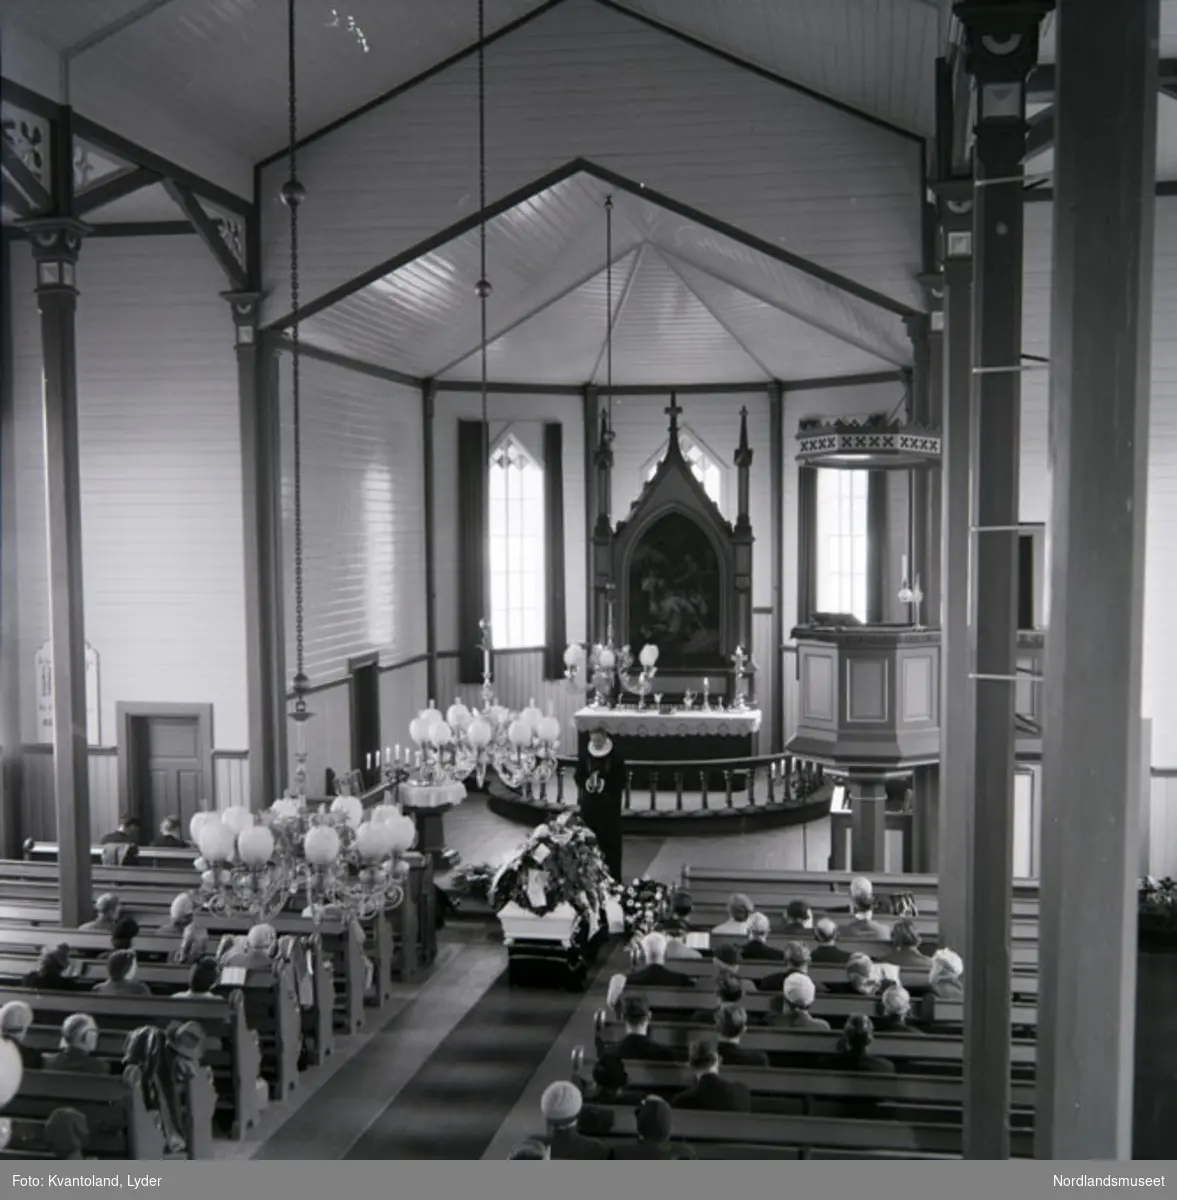 Kvantolands protokoll: Båren til Eilertsen, Gyltvik i Røsvik kirke